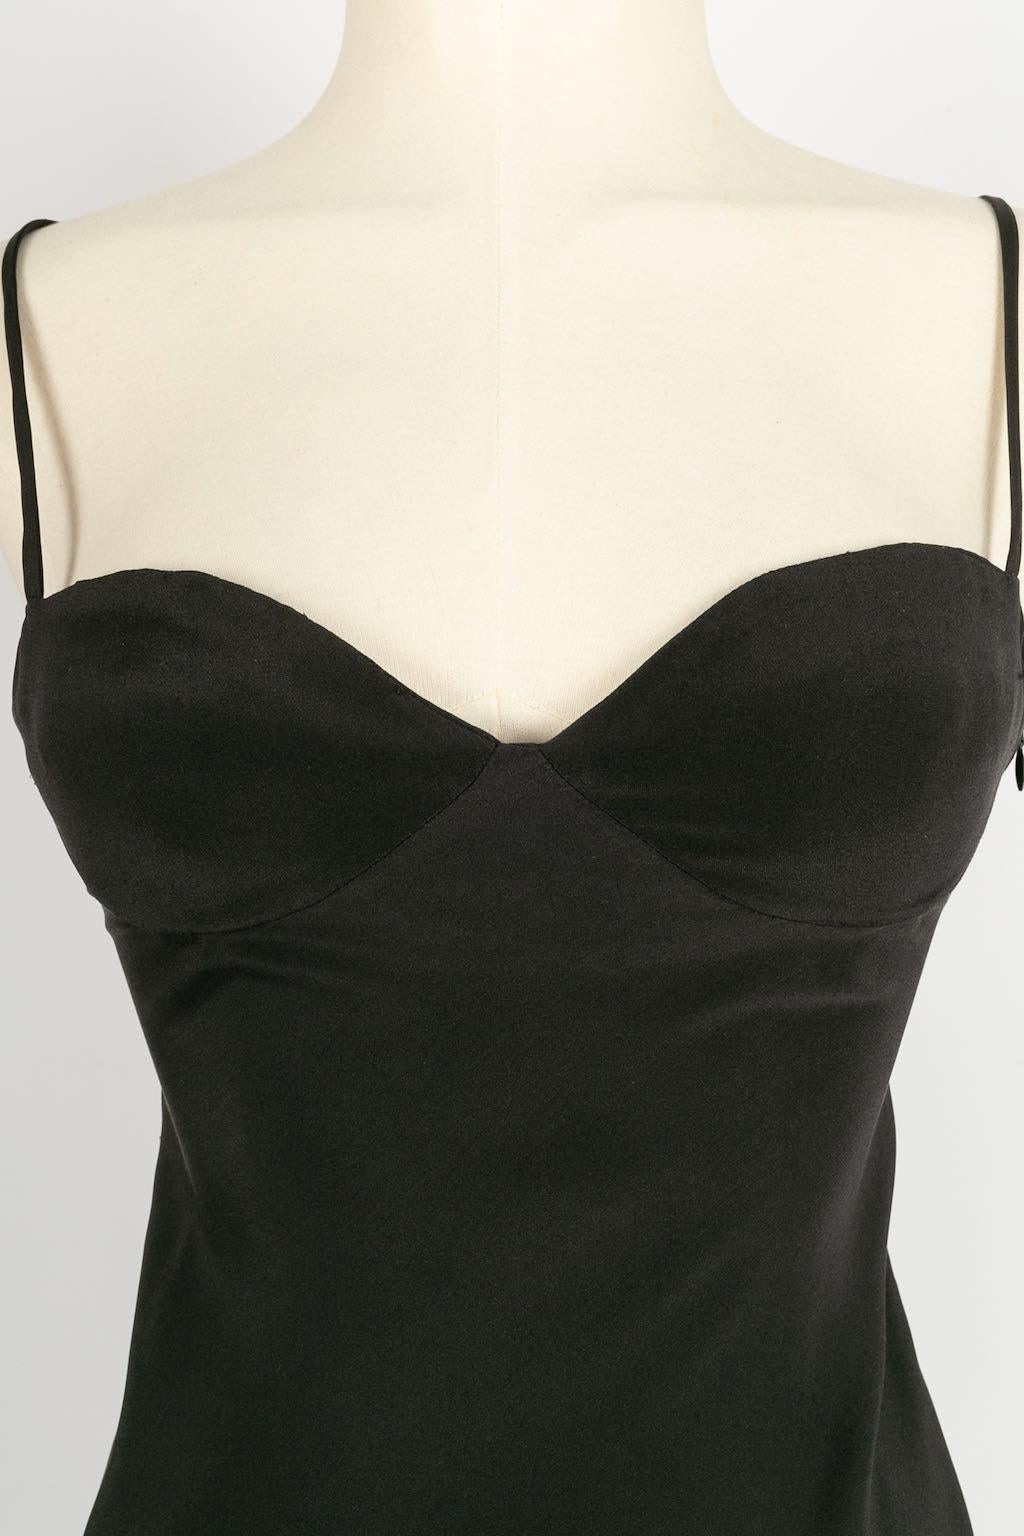 Franck Sorbier Haute Couture Long Silk Dress, Size 36FR For Sale 2